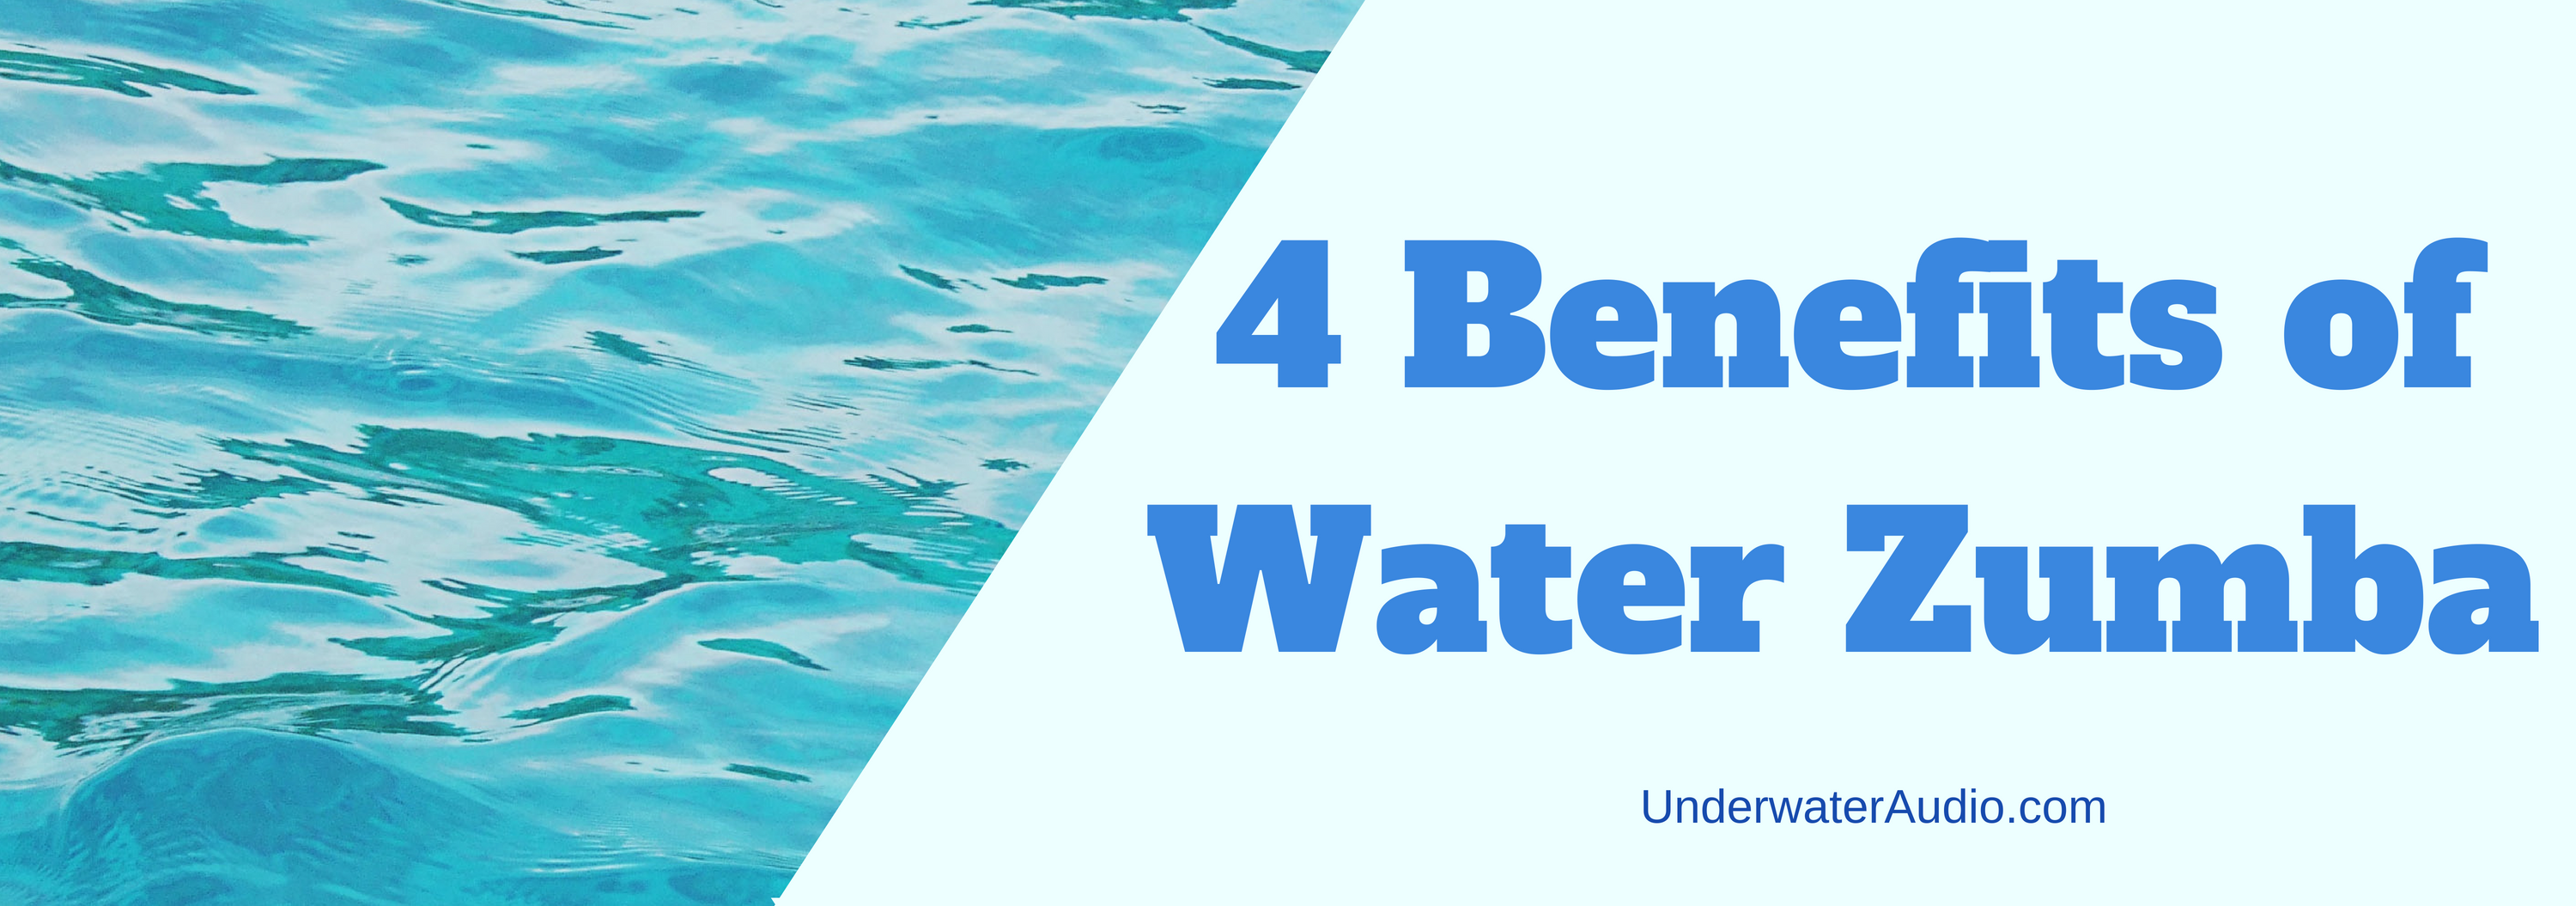 4 Benefits of Water Zumba